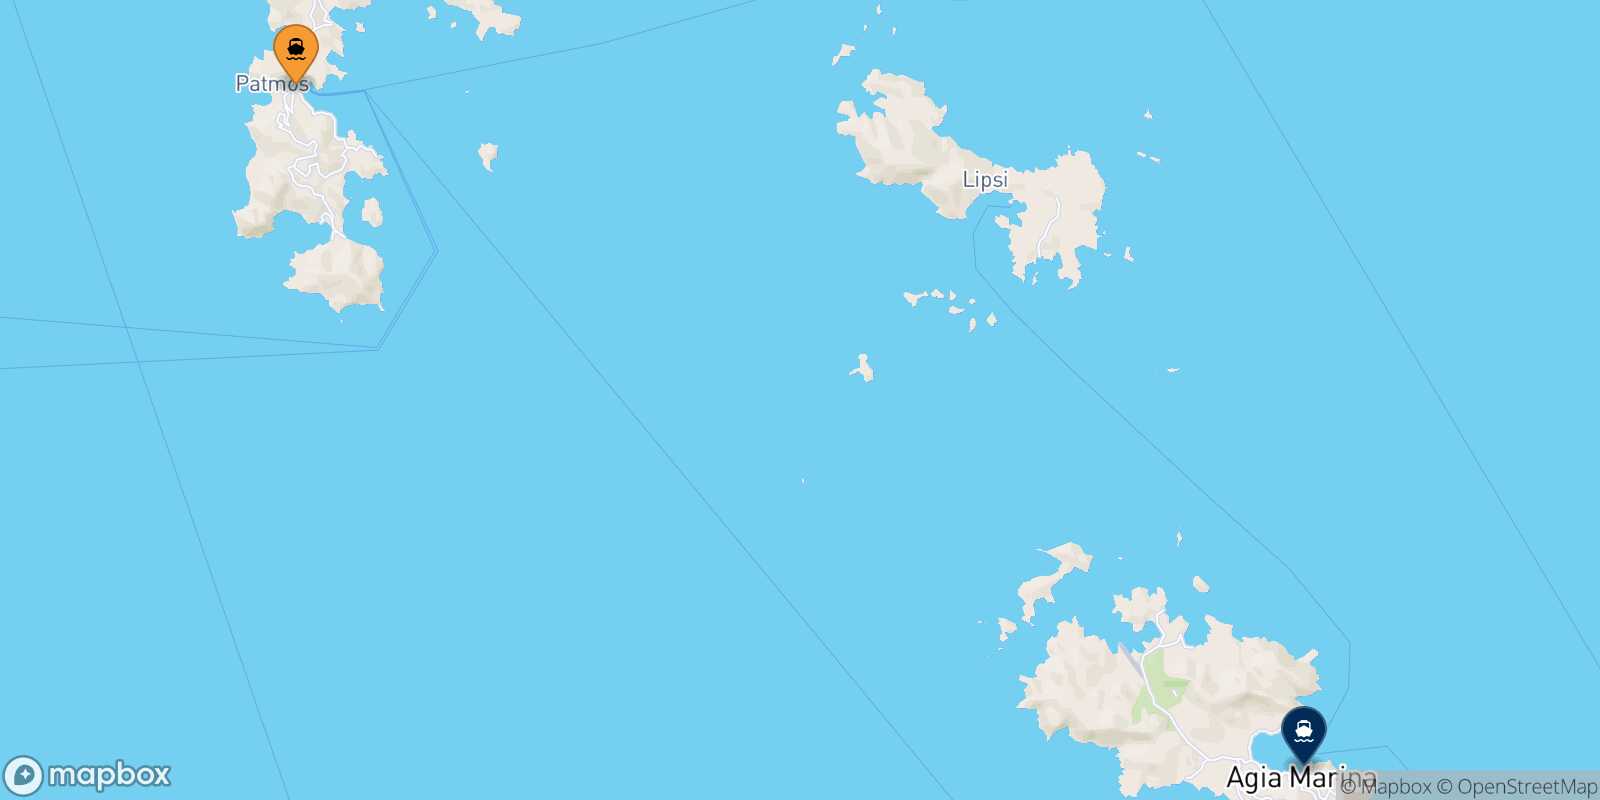 Mapa de la ruta Patmos Leros